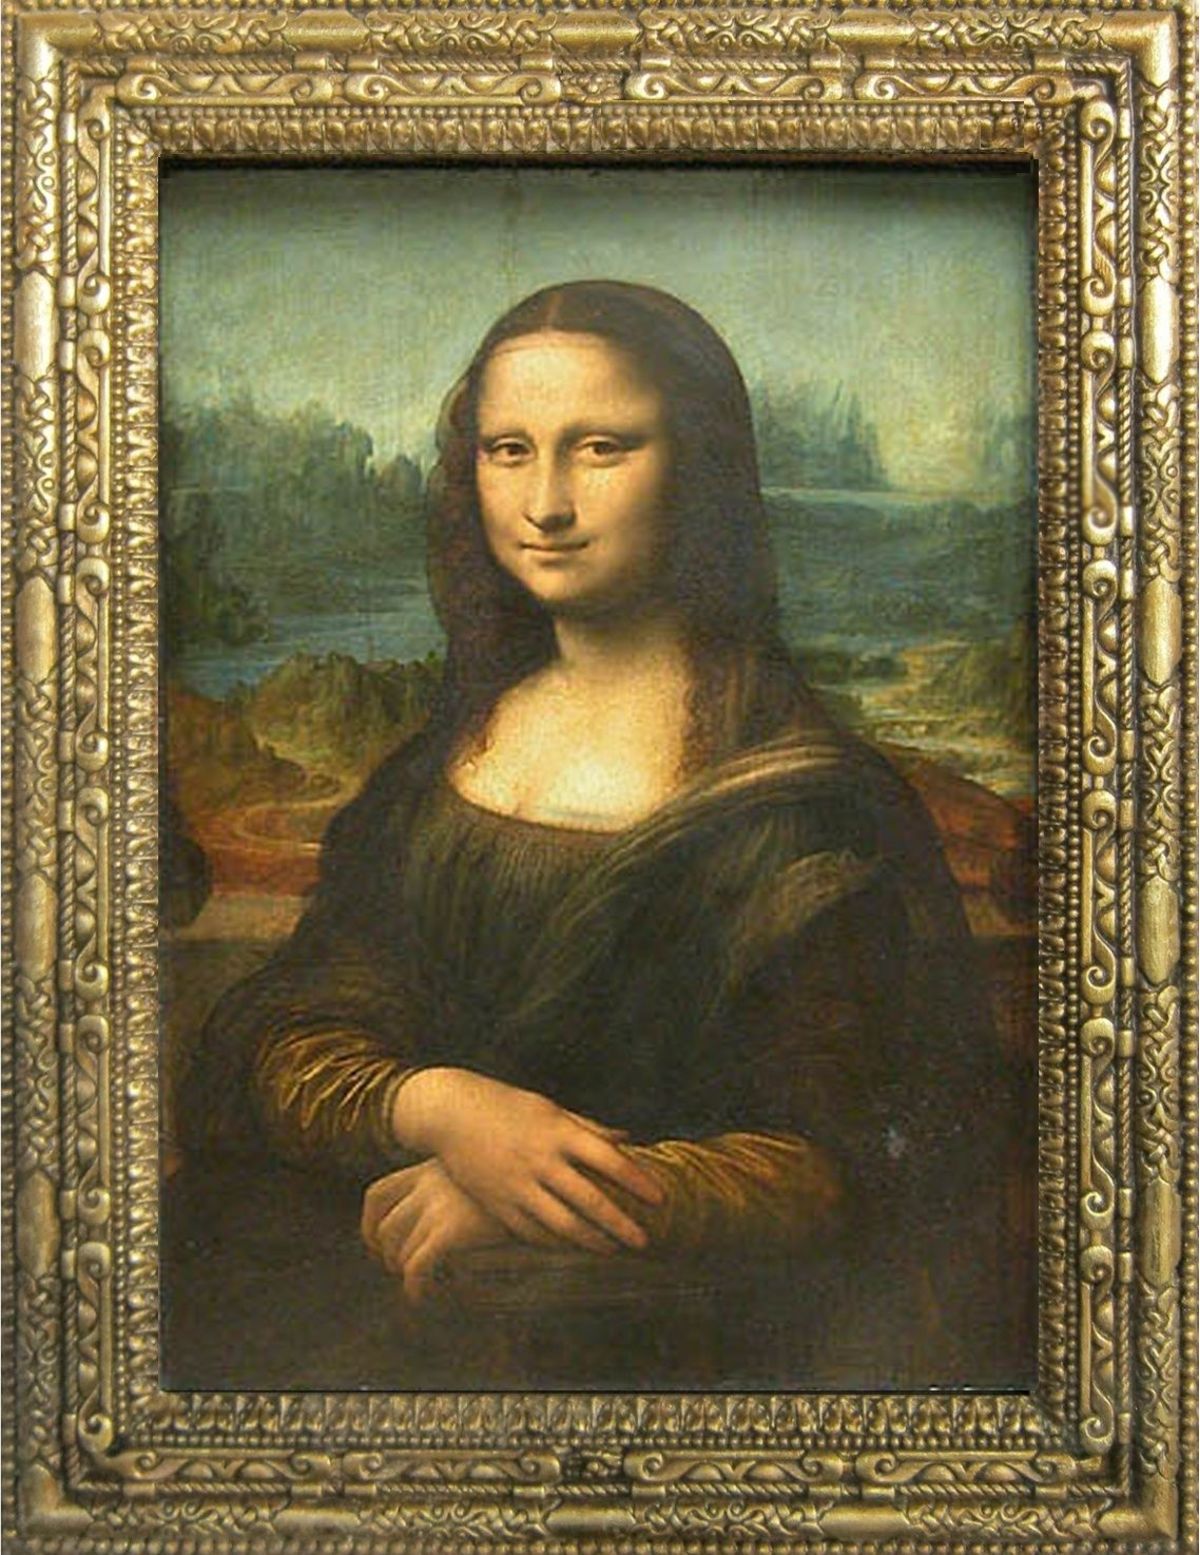 Vẽ Mona Lisa: Bạn có bao giờ tự hỏi tại sao bức ảnh Mona Lisa lại được xem là một tác phẩm nghệ thuật vĩ đại? Chắc hẳn bạn sẽ tìm thấy lời giải thích của bạn khi xem bức tranh vẽ nghệ thuật này. Hãy tham gia cùng chúng tôi để tìm hiểu về vẻ đẹp kỳ diệu của nghệ thuật.